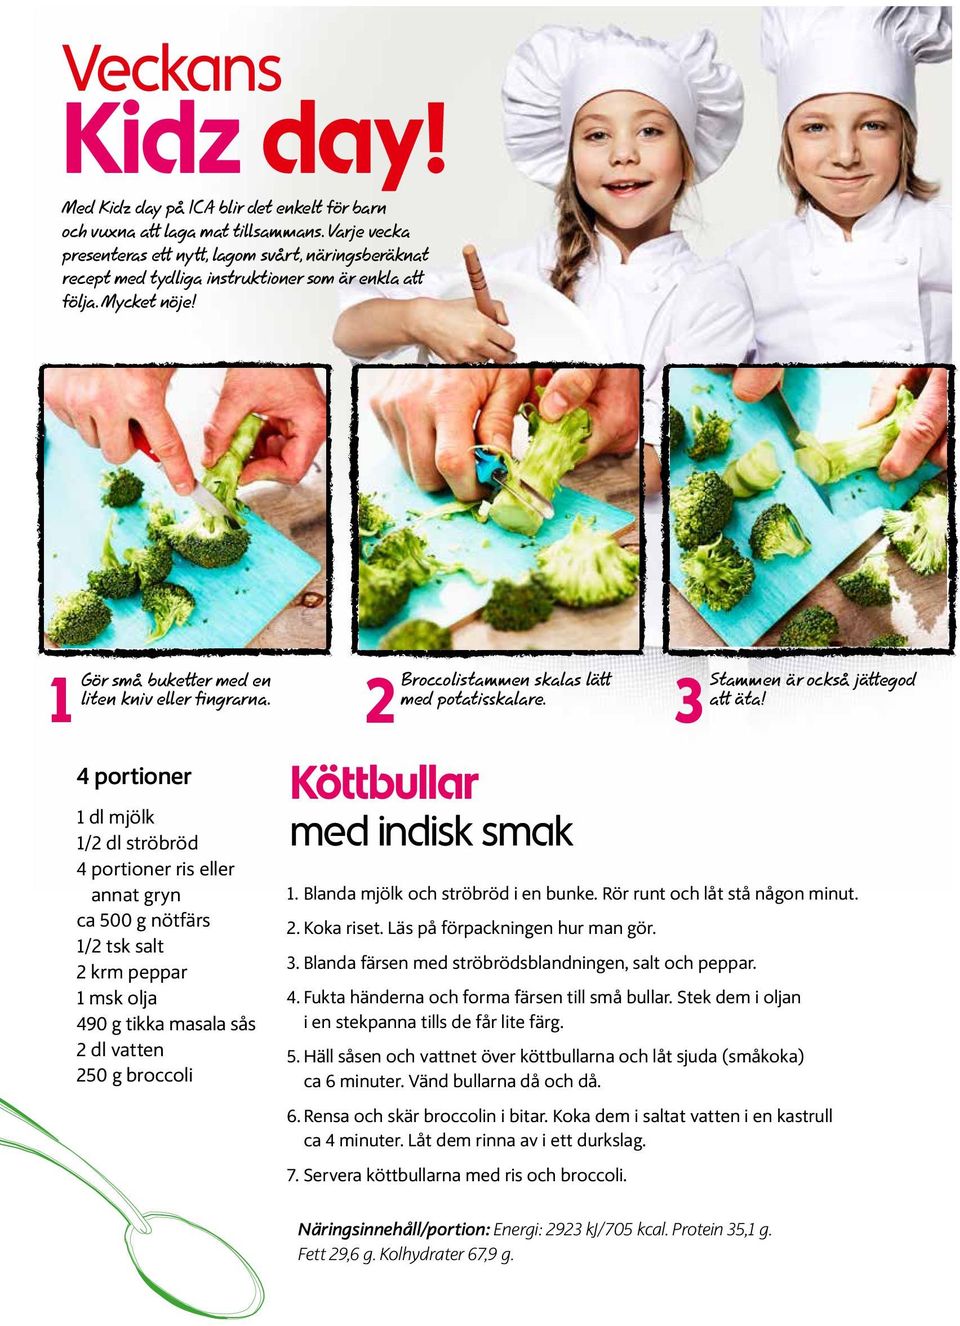 Gör små buketter med en Broccolistammen skalas lätt 1 2 3 liten kniv eller fingrarna. med potatisskalare.